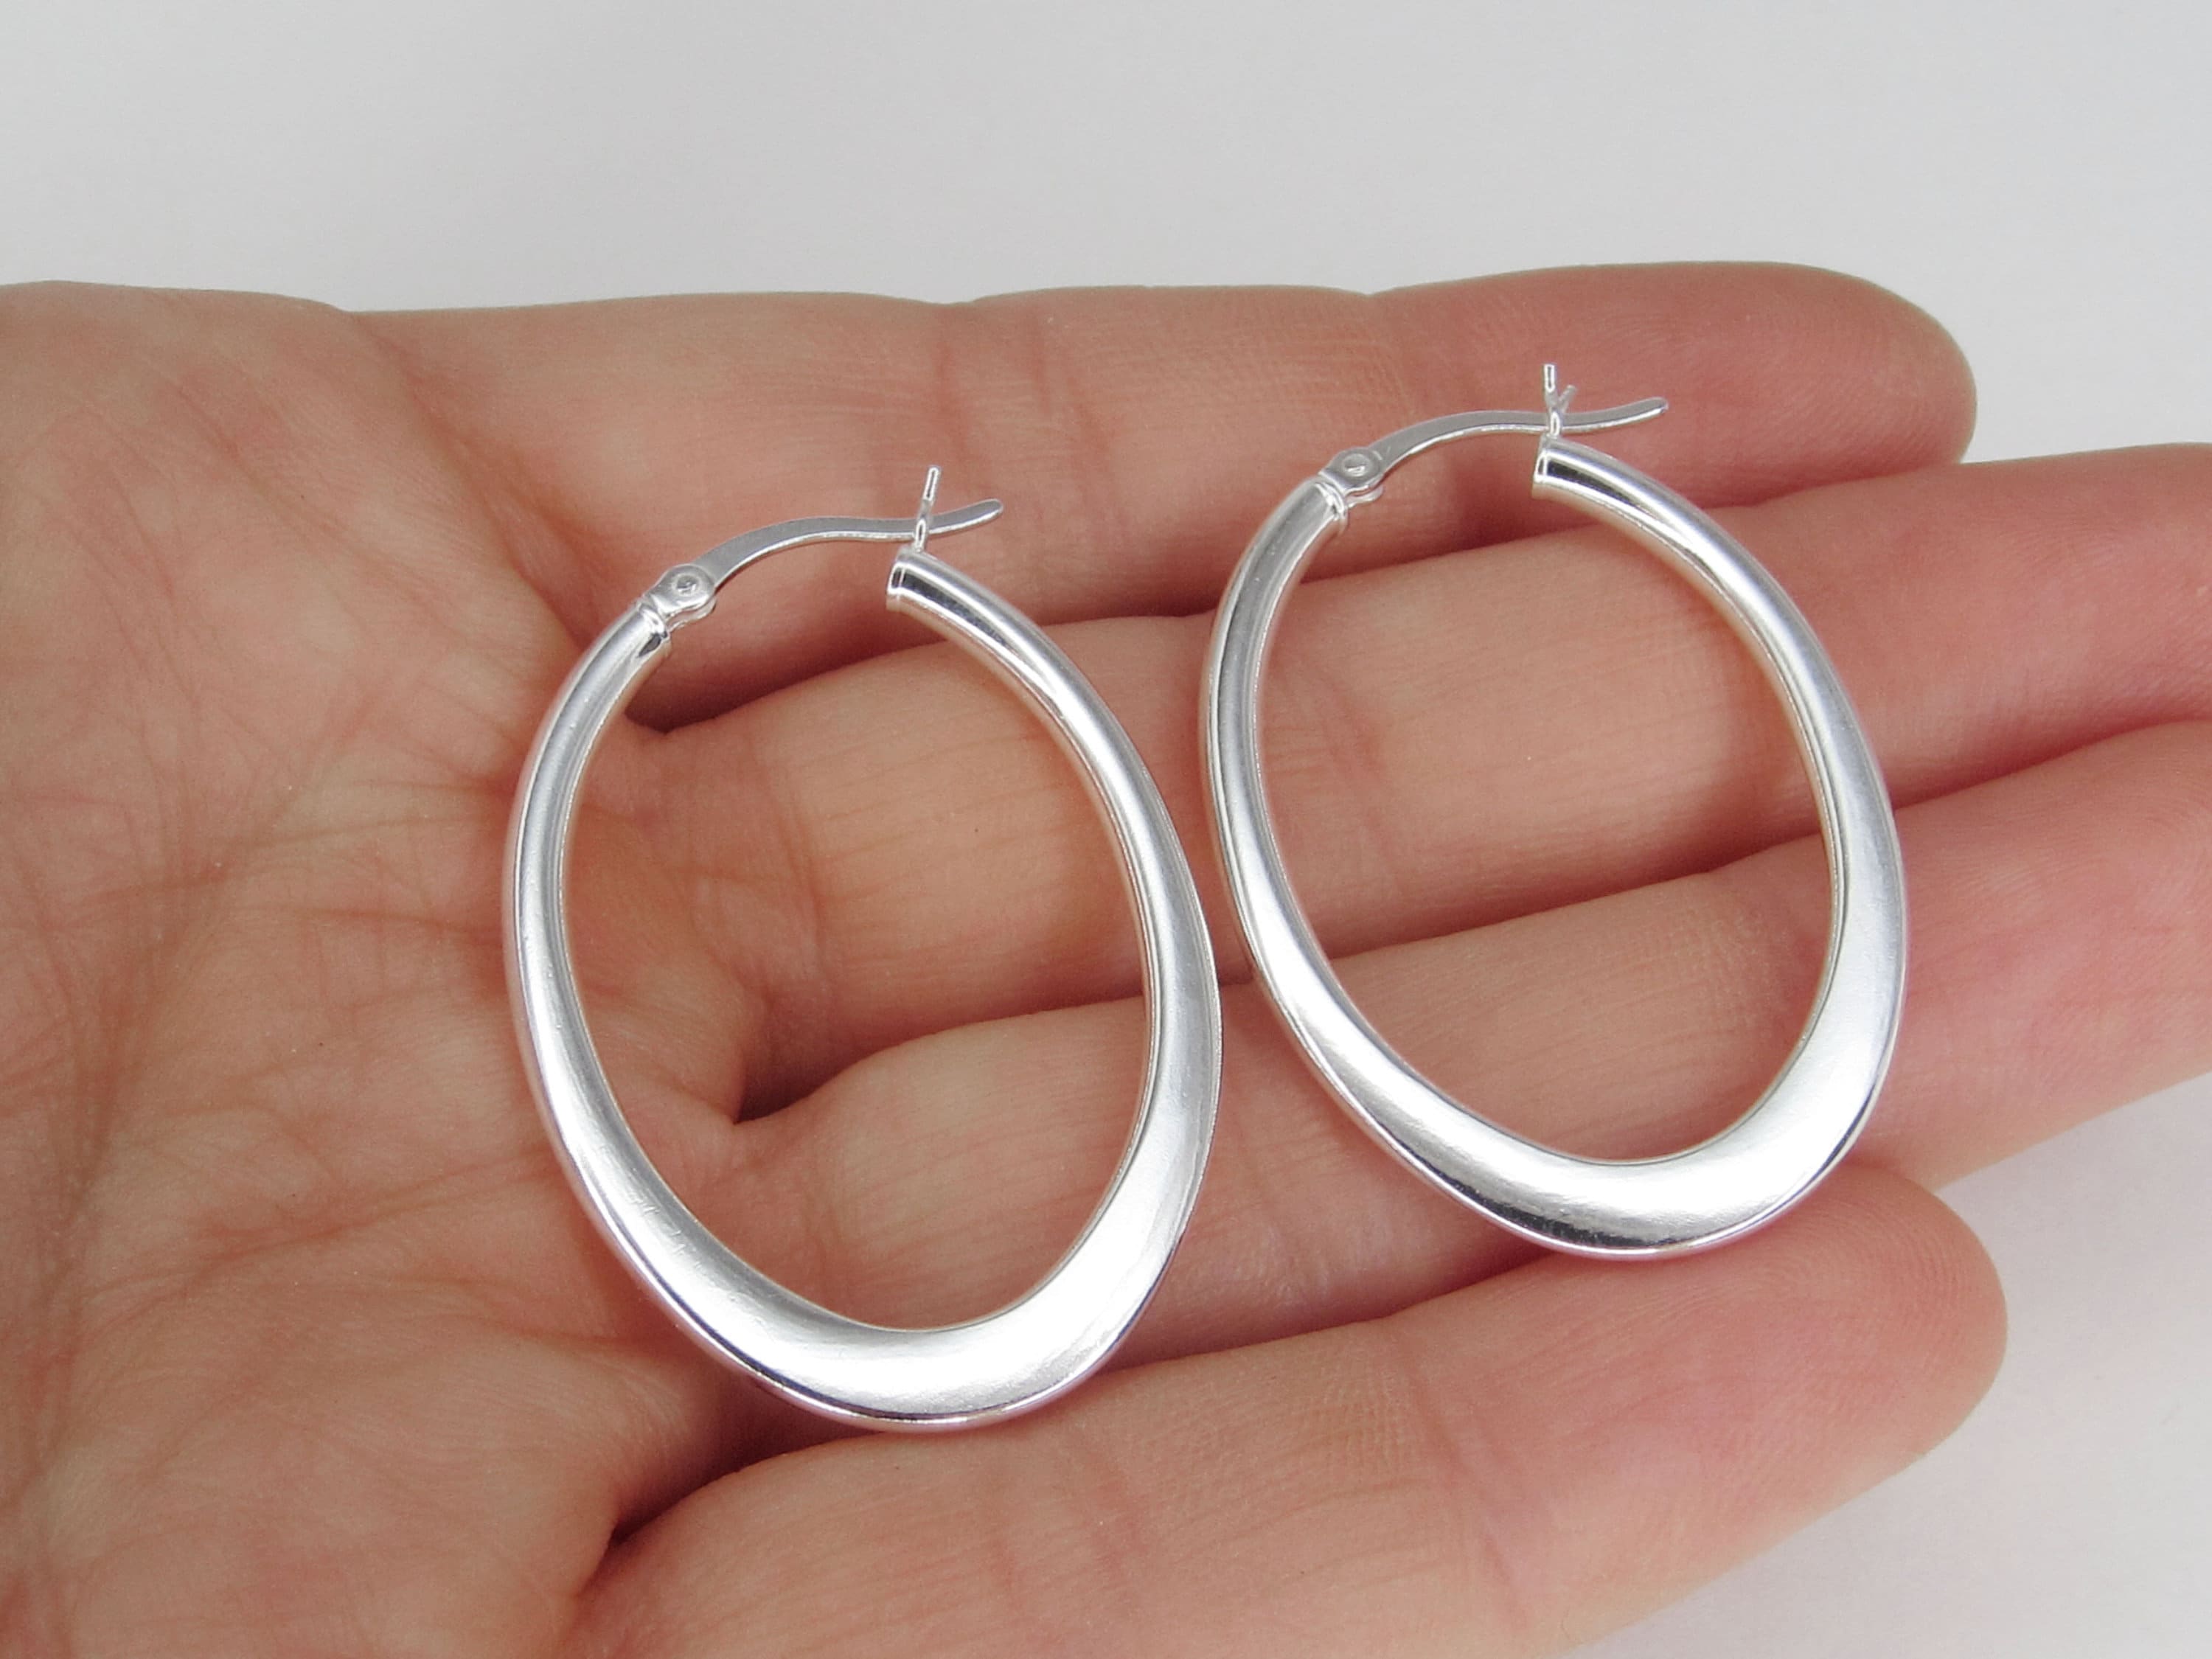 Oval Hoop Earrings 925 Sterling Silver Jewelry 40mm Long - Etsy